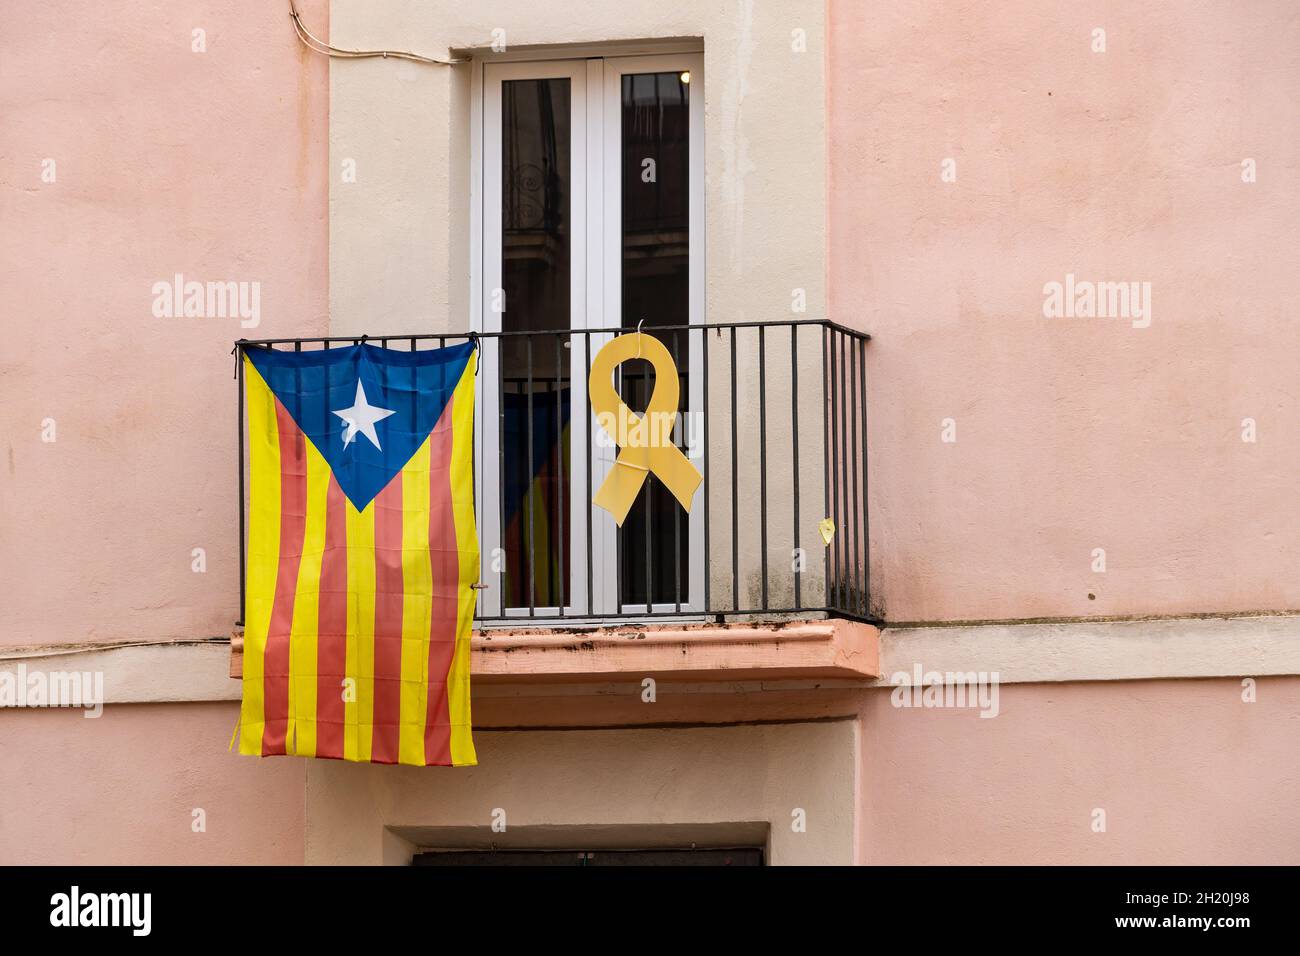 Katalanische Unabhängigkeitsfahne und gelbes Band, das an einem Fenster hängt, fordern die Unabhängigkeit Kataloniens und die Freiheit des inhaftierten Politikers Stockfoto